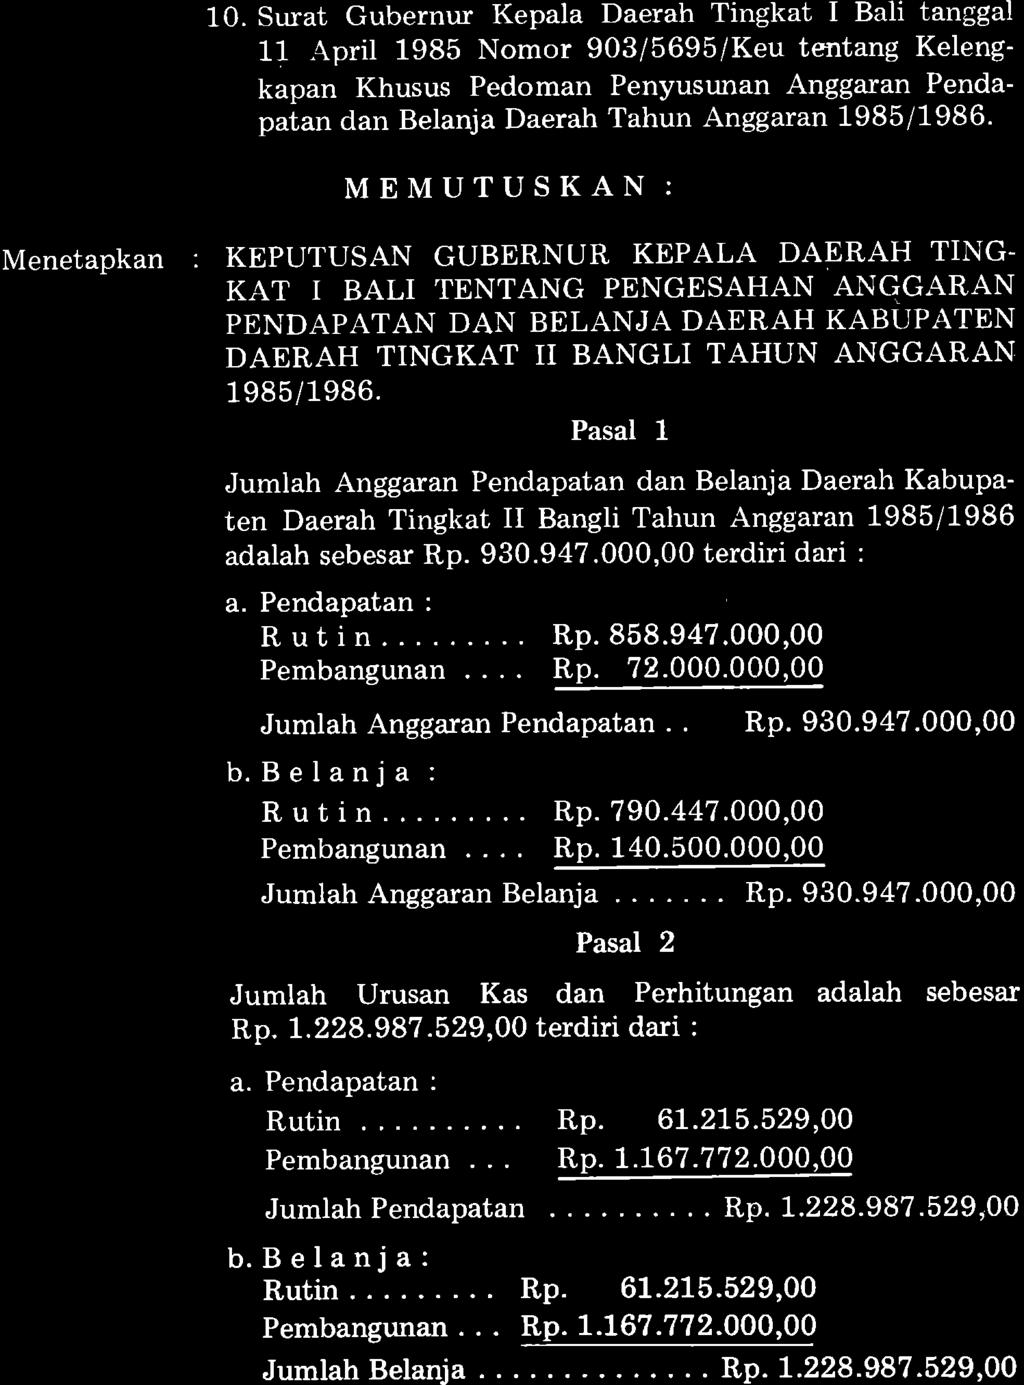 10. Surat Gubernur Kepala Daerah Tingkat I Bali tanggal 11 April 1985 Nomor 903/5695/Keu tentang Kelengkapan Khusus Pedoman Penyusunan Anggaran Pendapatan dan Belanja Daerah Tahun Anggaran 1985/1986'